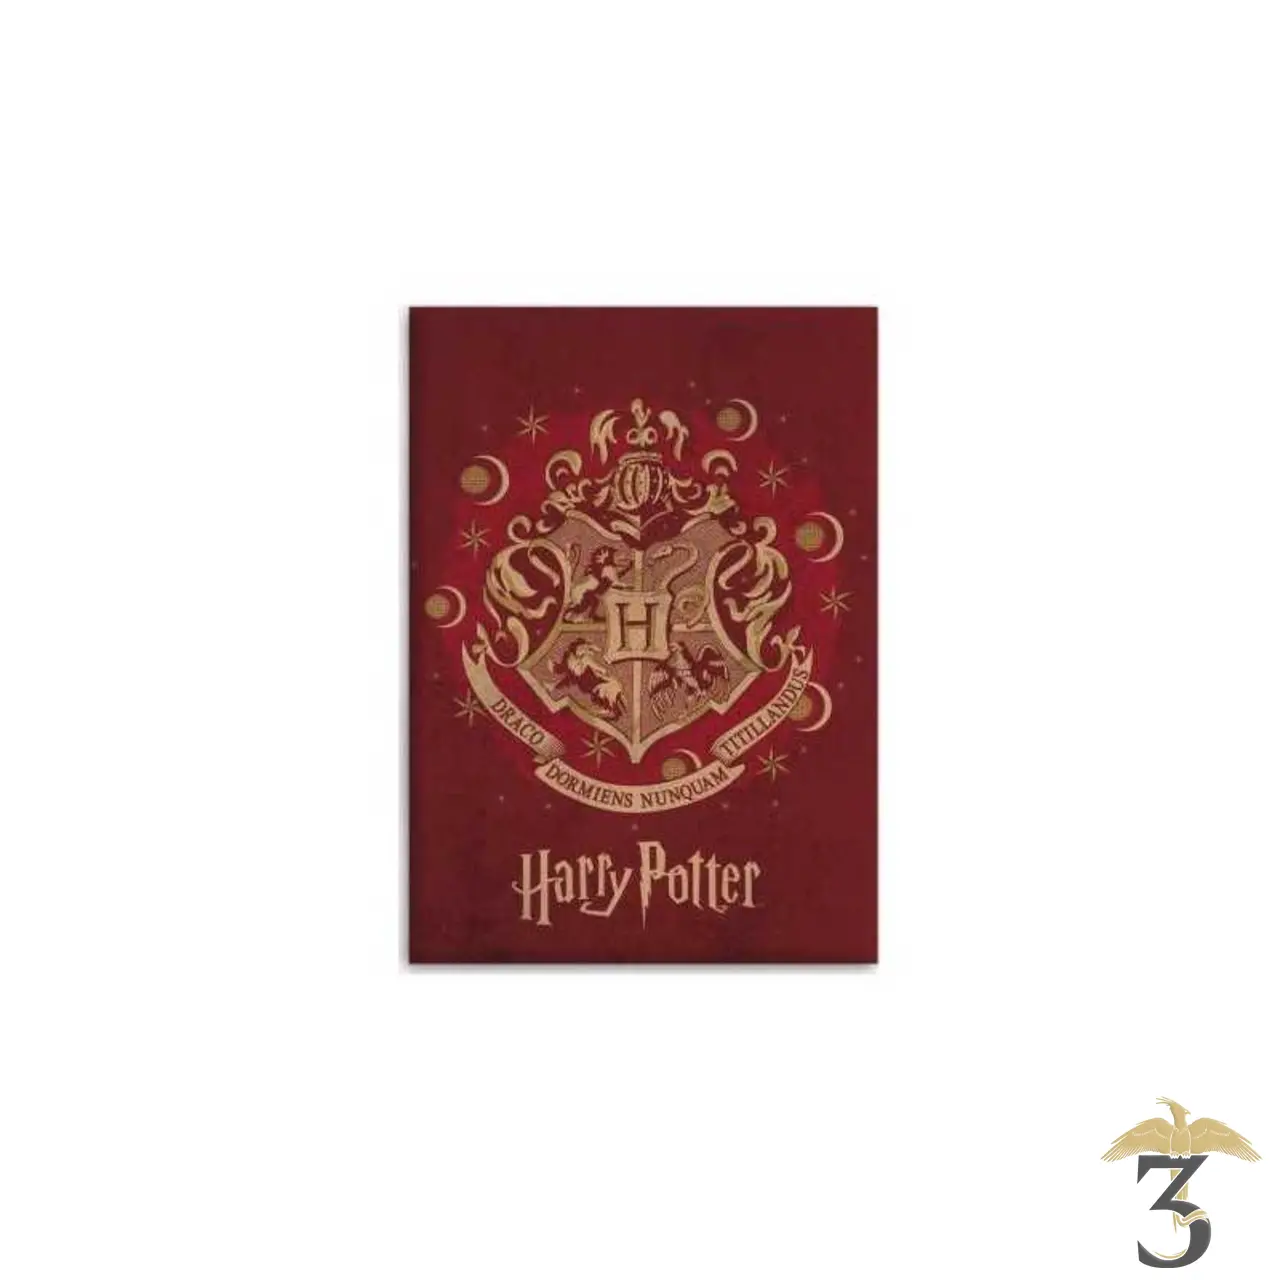 Plaid couverture Harry Potter - Harry Potter